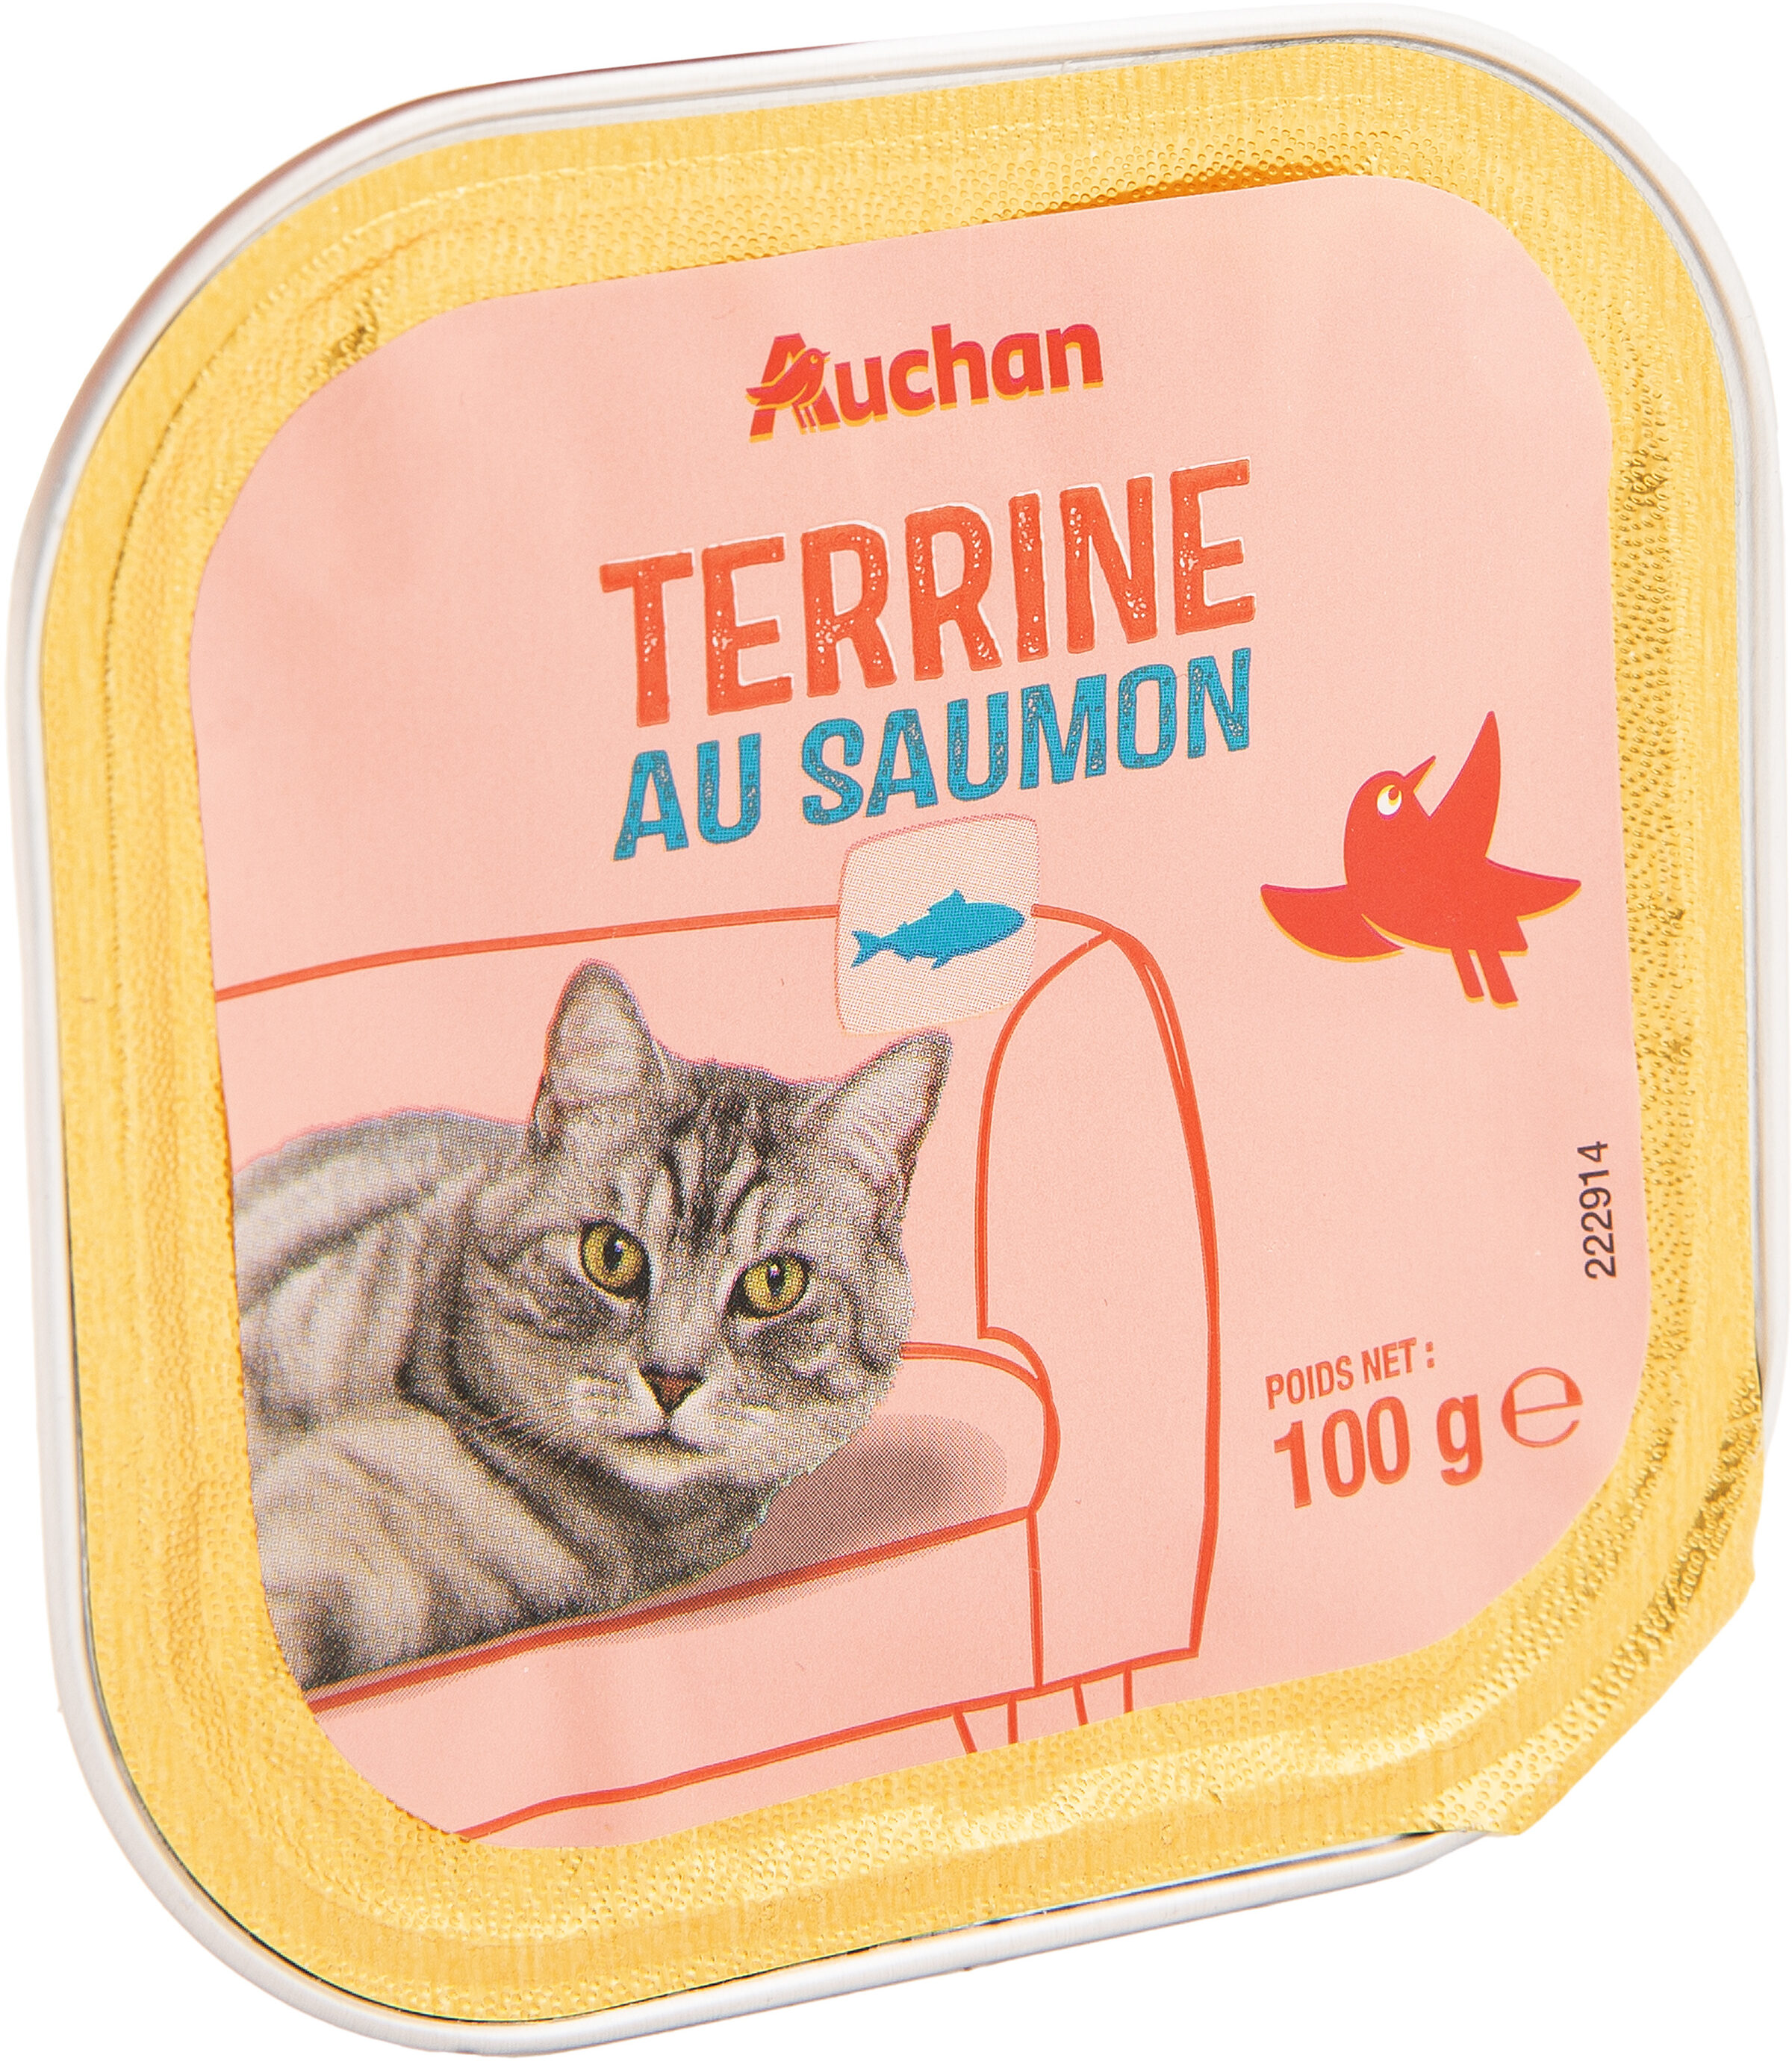 Terrine au saumon - Product - fr